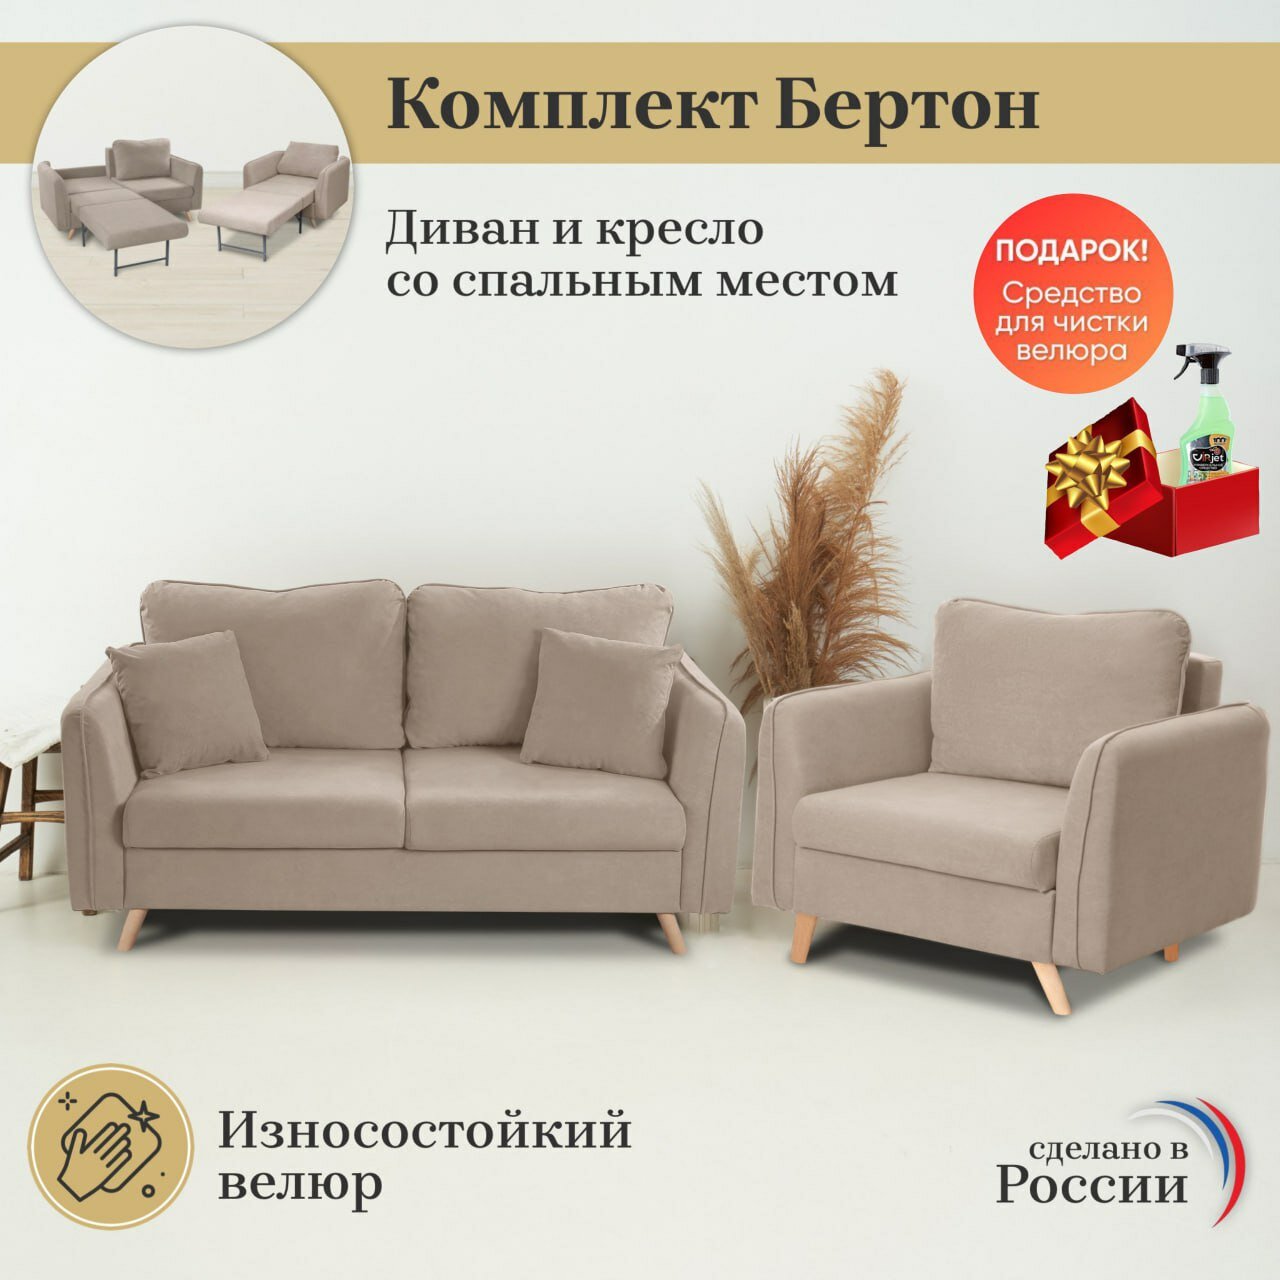 Комплект мягкой мебели диван и кресло Brendoss 330 цвет бежевый